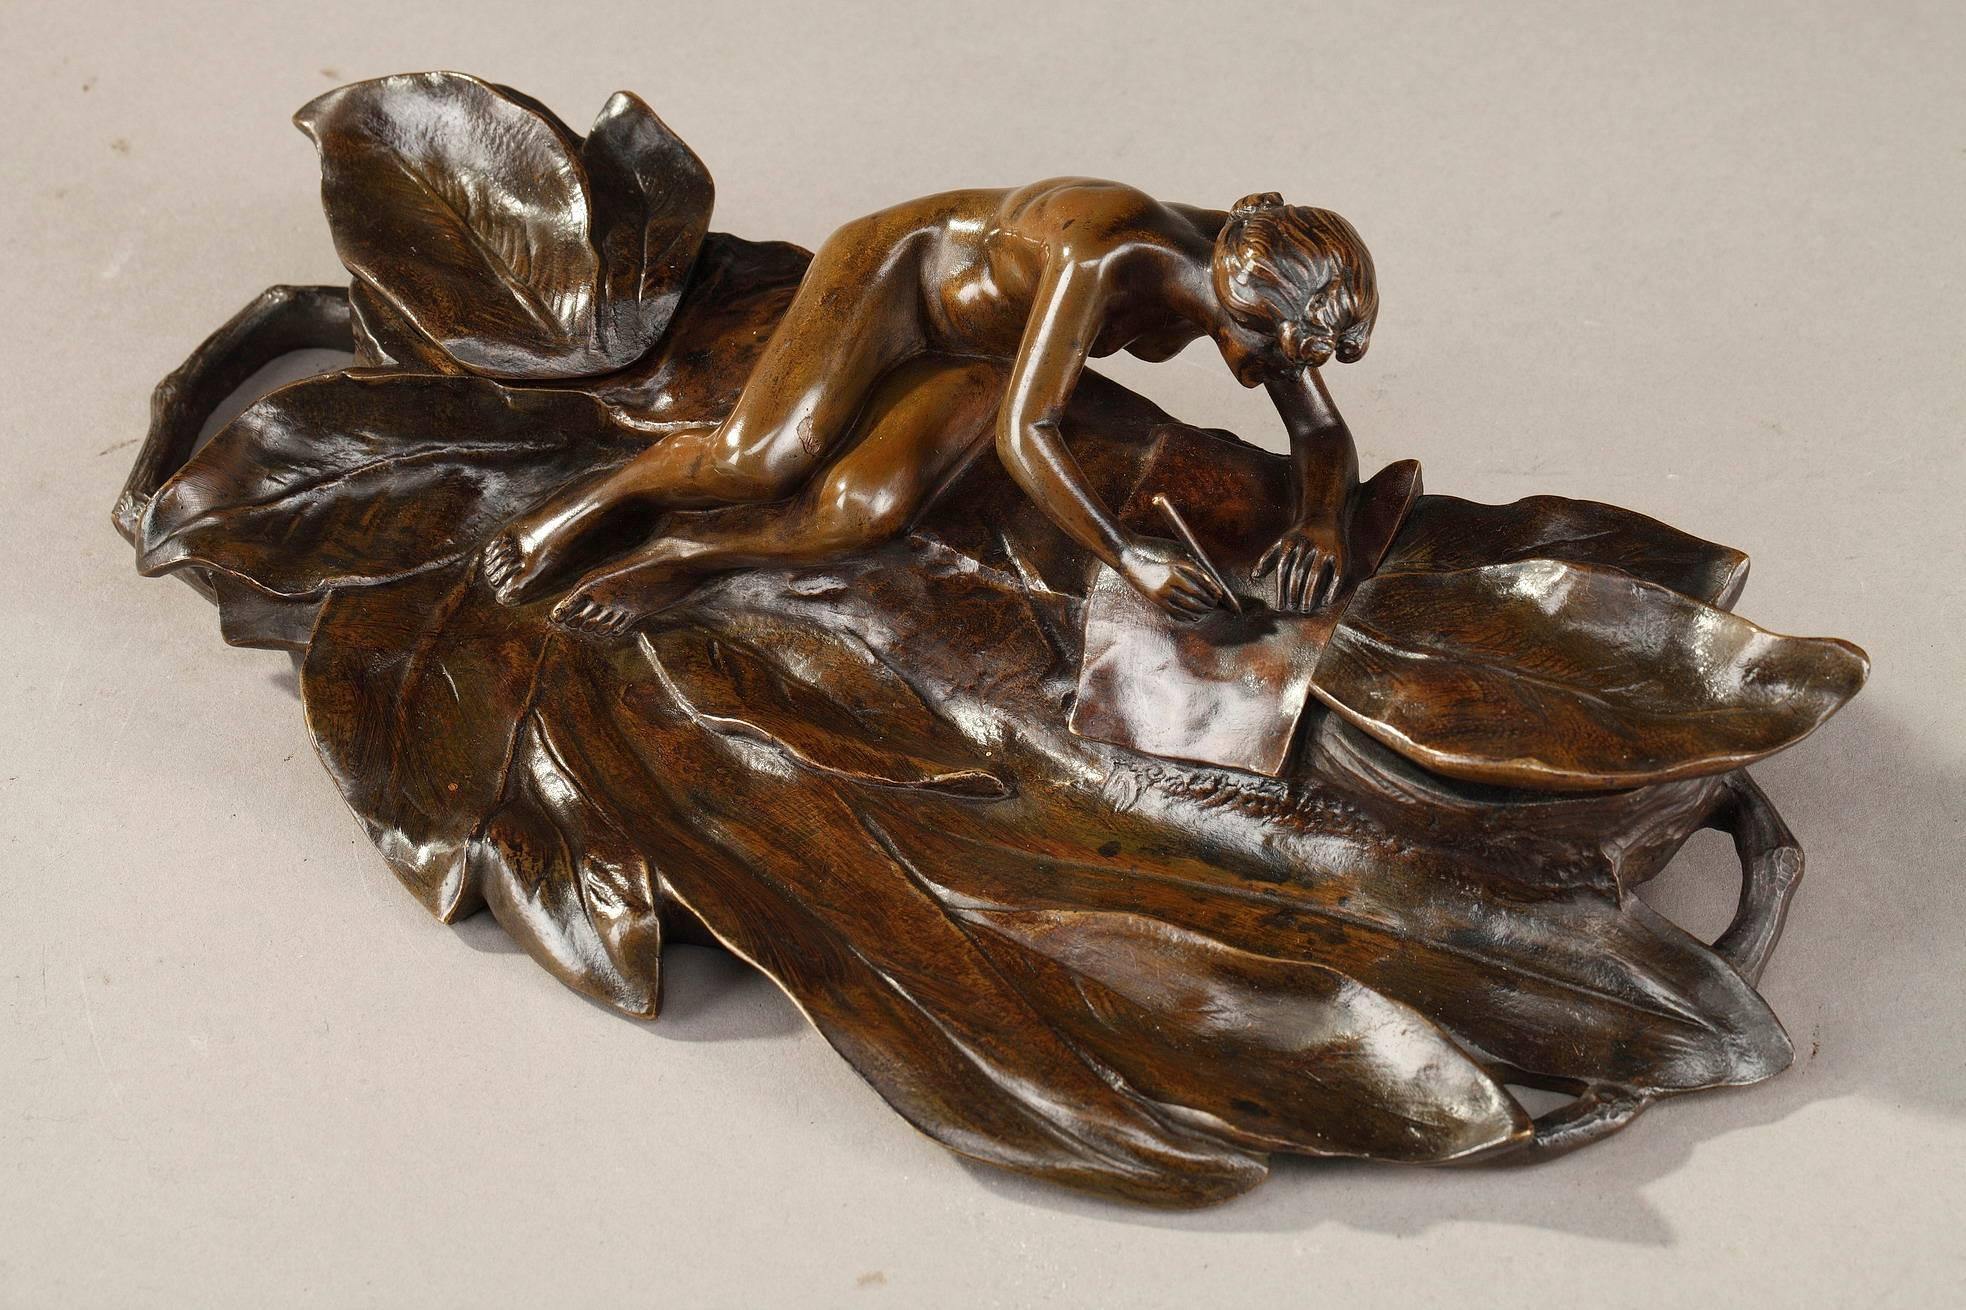 French Art Nouveau Bronze Sculpture and Inkwell by Karl Korschann